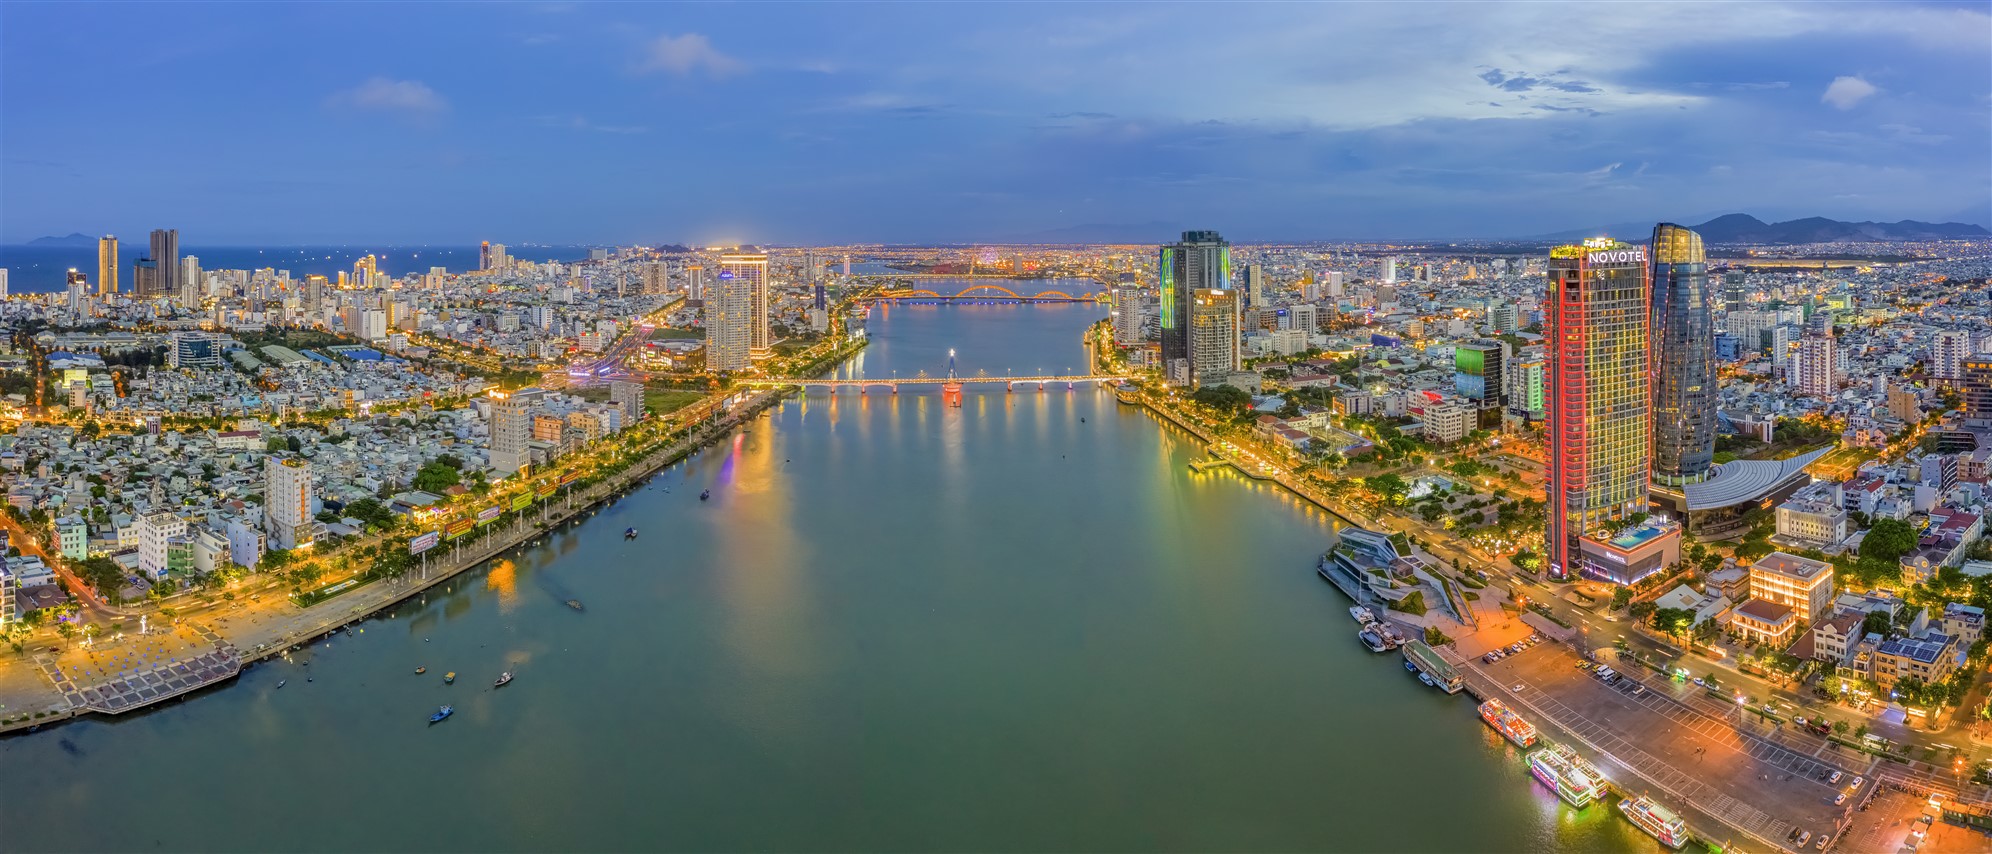 Kiến trúc hệ thống hỗ trợ và quản lý mô hình Du lịch thông minh Đà Nẵng  gồm những gì  Đại học Đà Nẵng